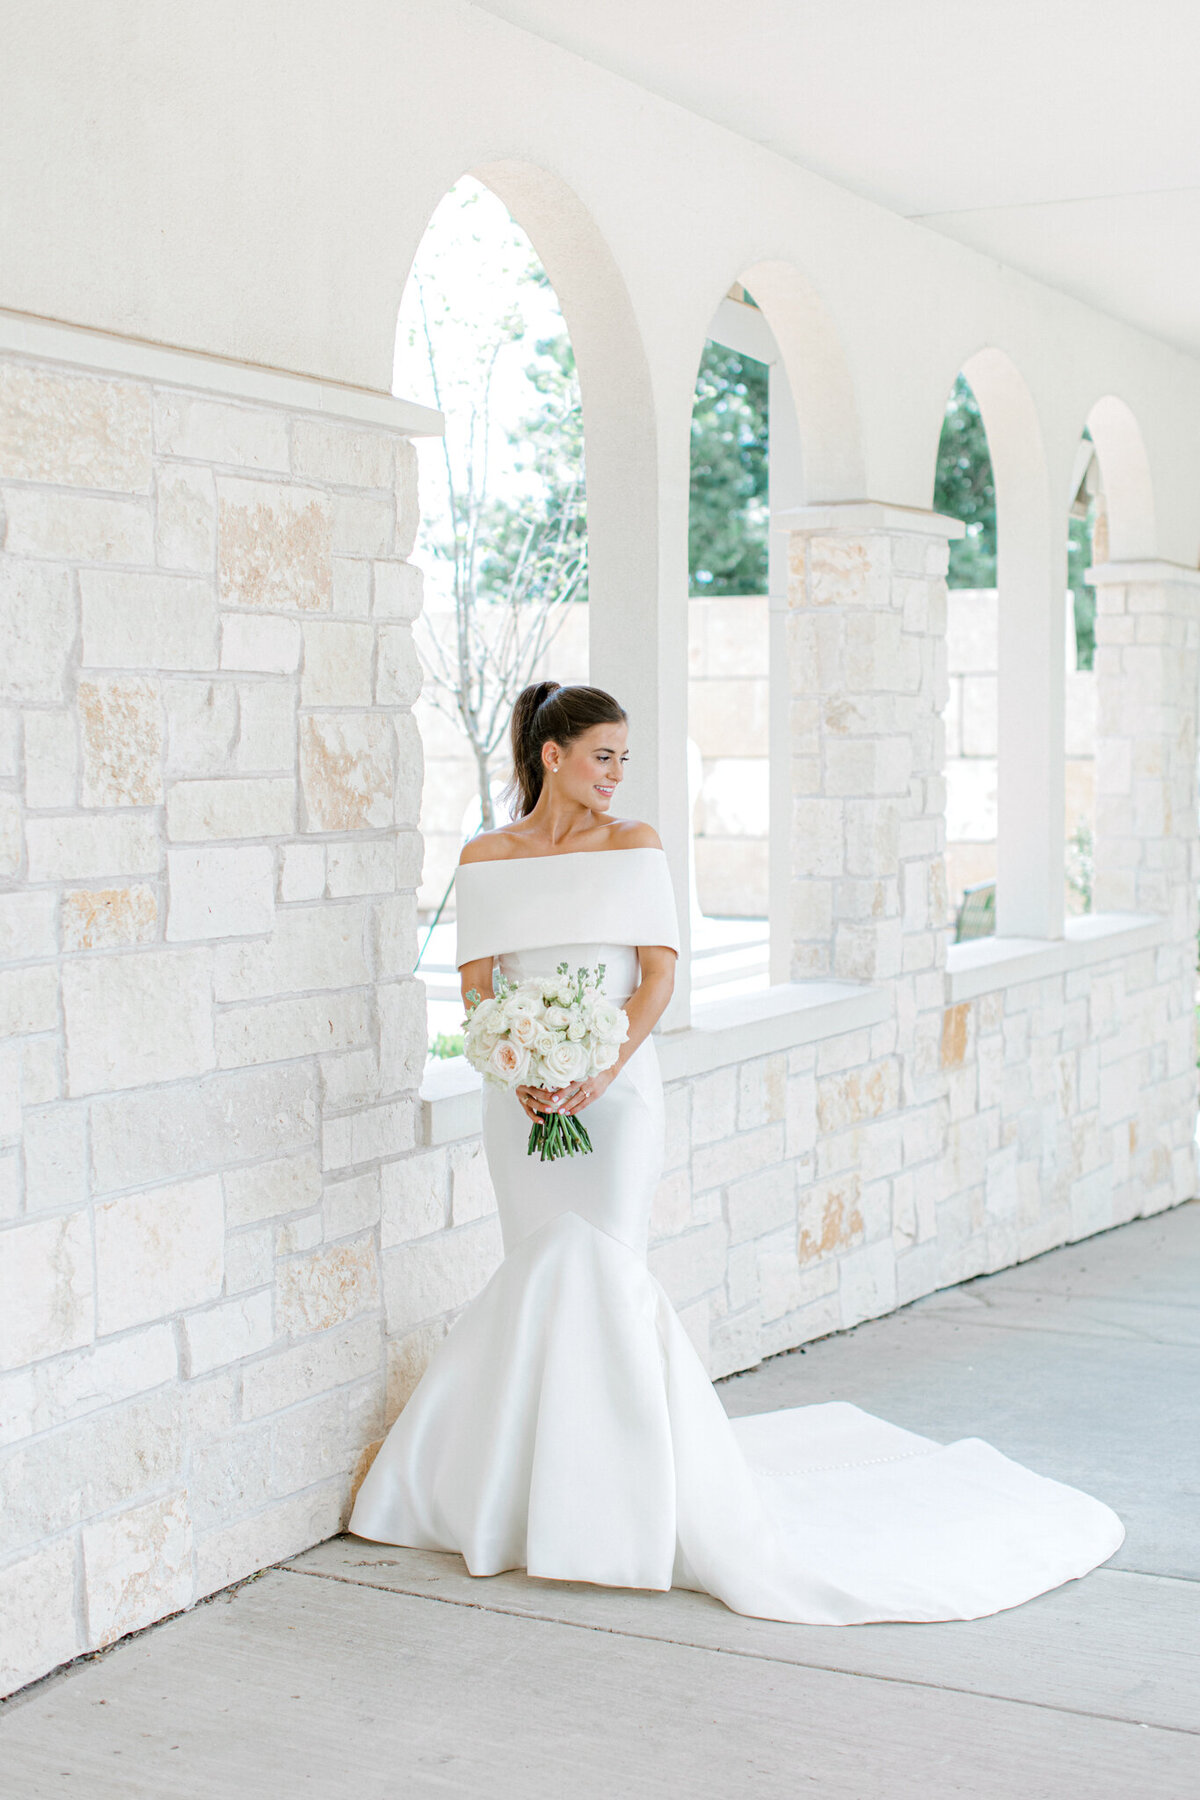 Annie & Logan's Wedding | Dallas Wedding Photographer | Sami Kathryn Photography-61